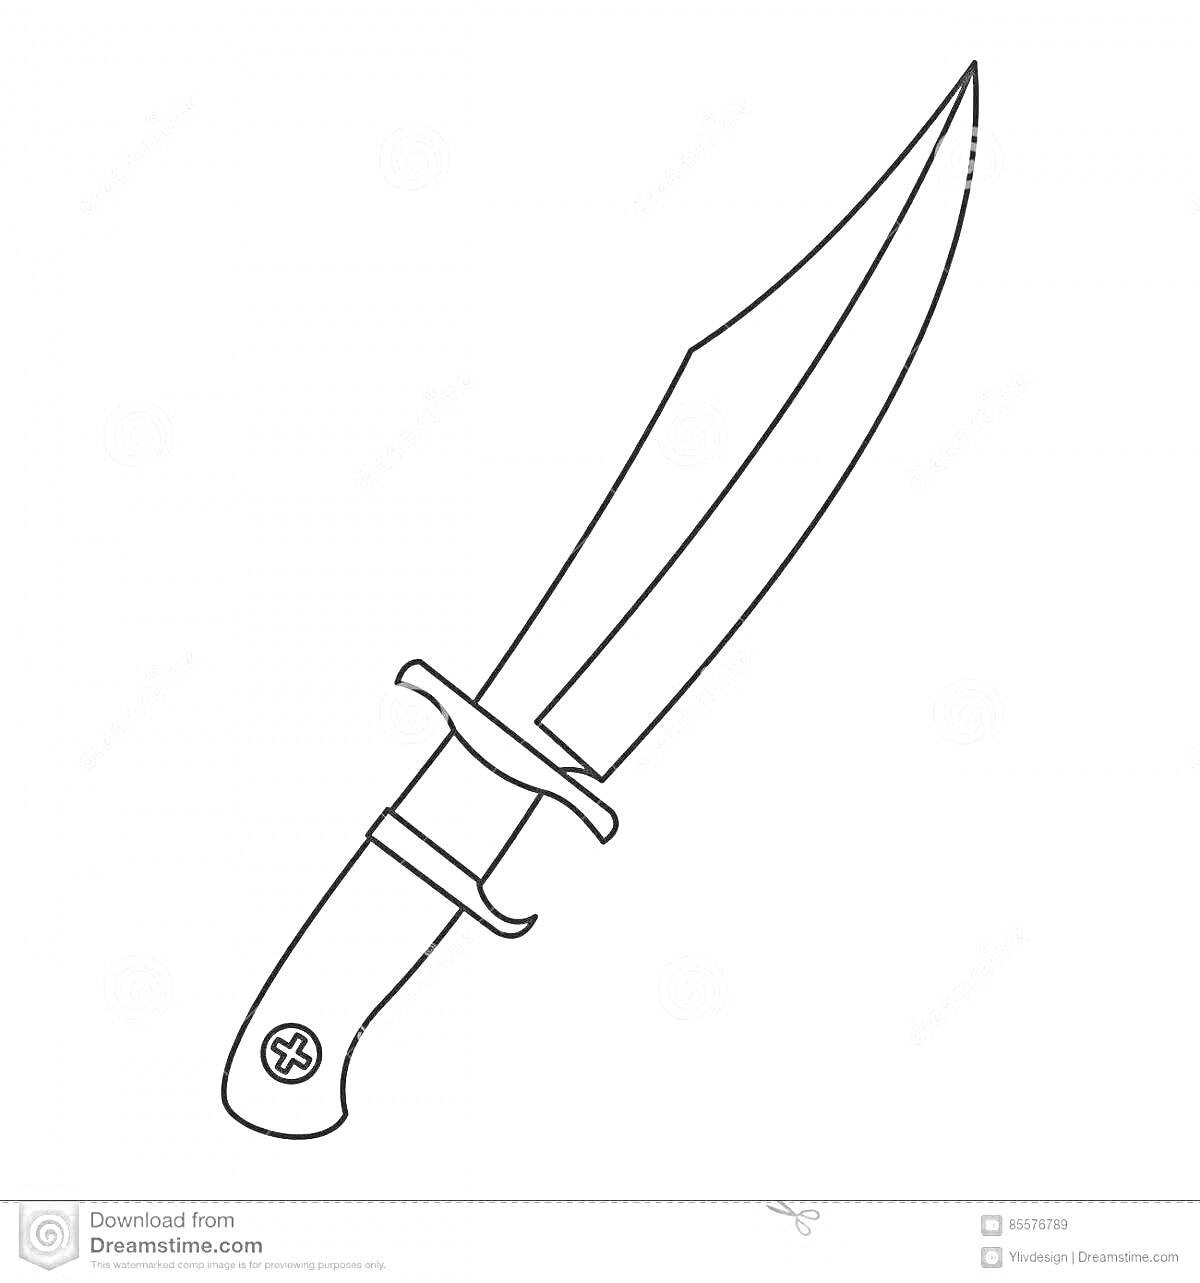 Раскраска Нож с гардой и закругленной рукояткой с крестом